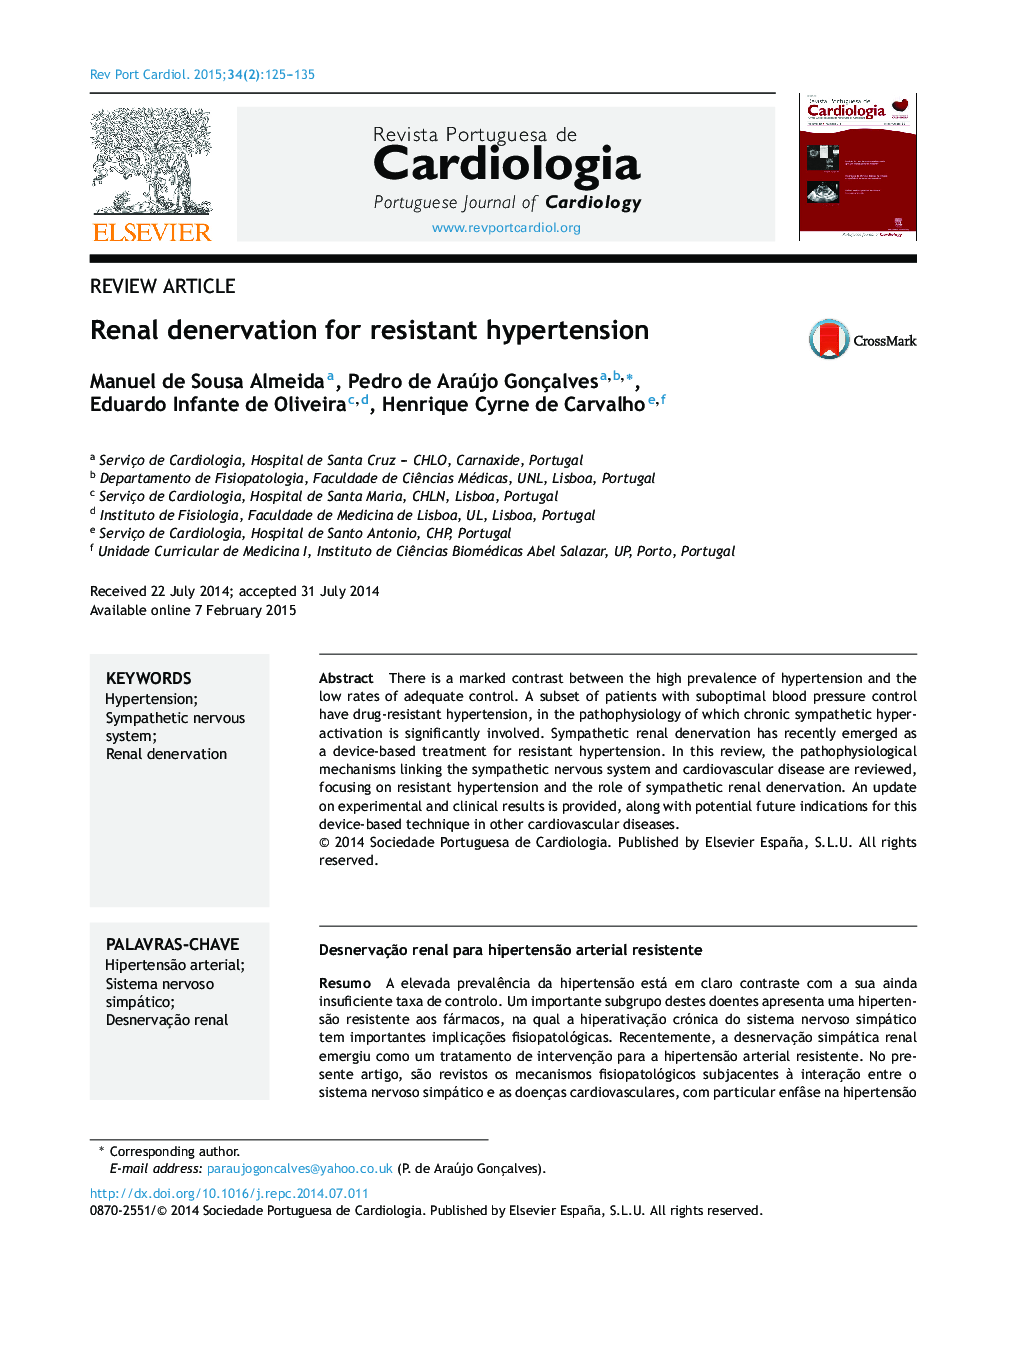 Renal denervation for resistant hypertension